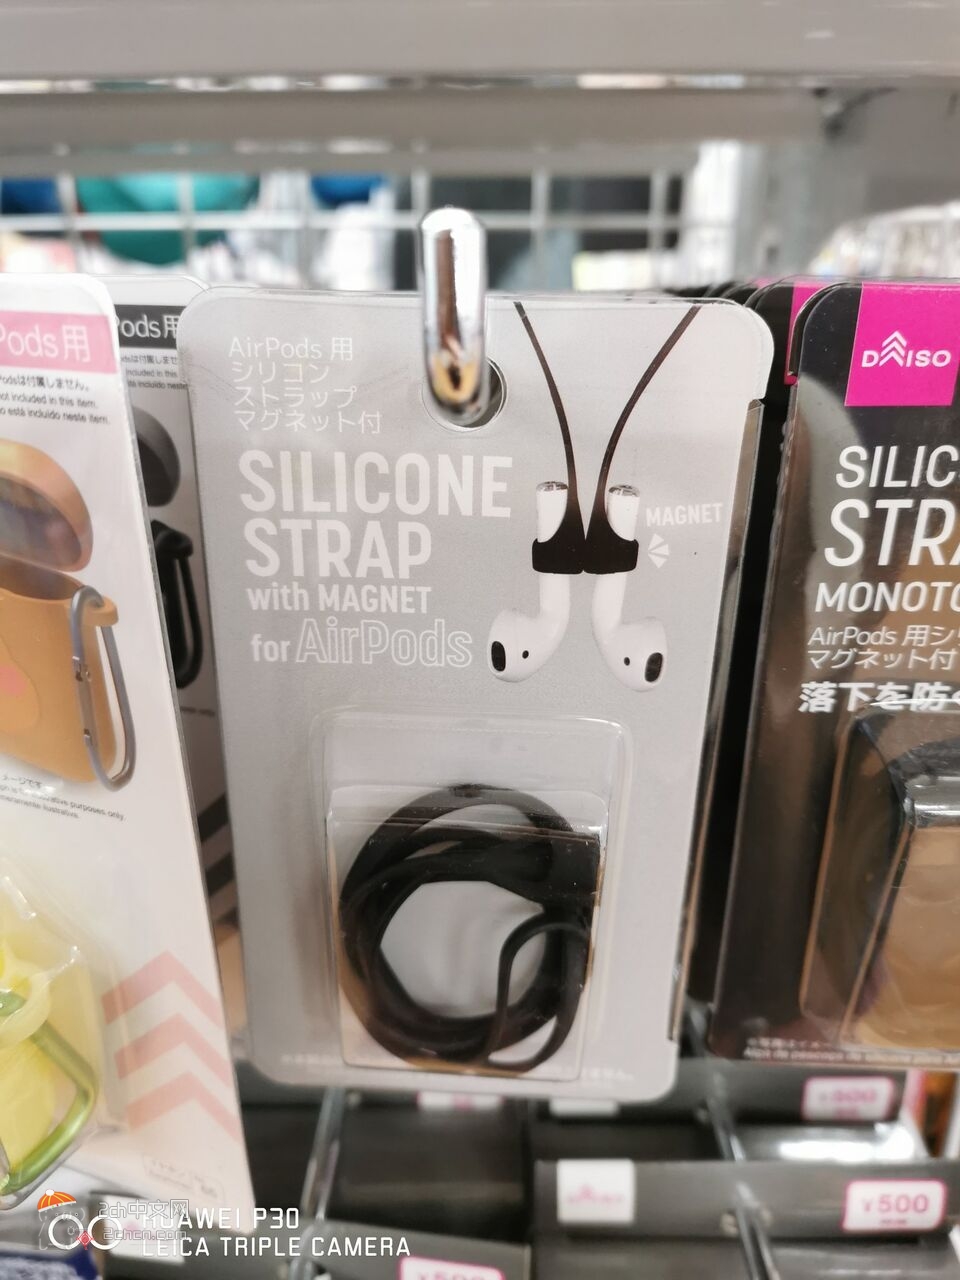 2ch：日本发售了可以防止无线耳机丢失的“绳子”